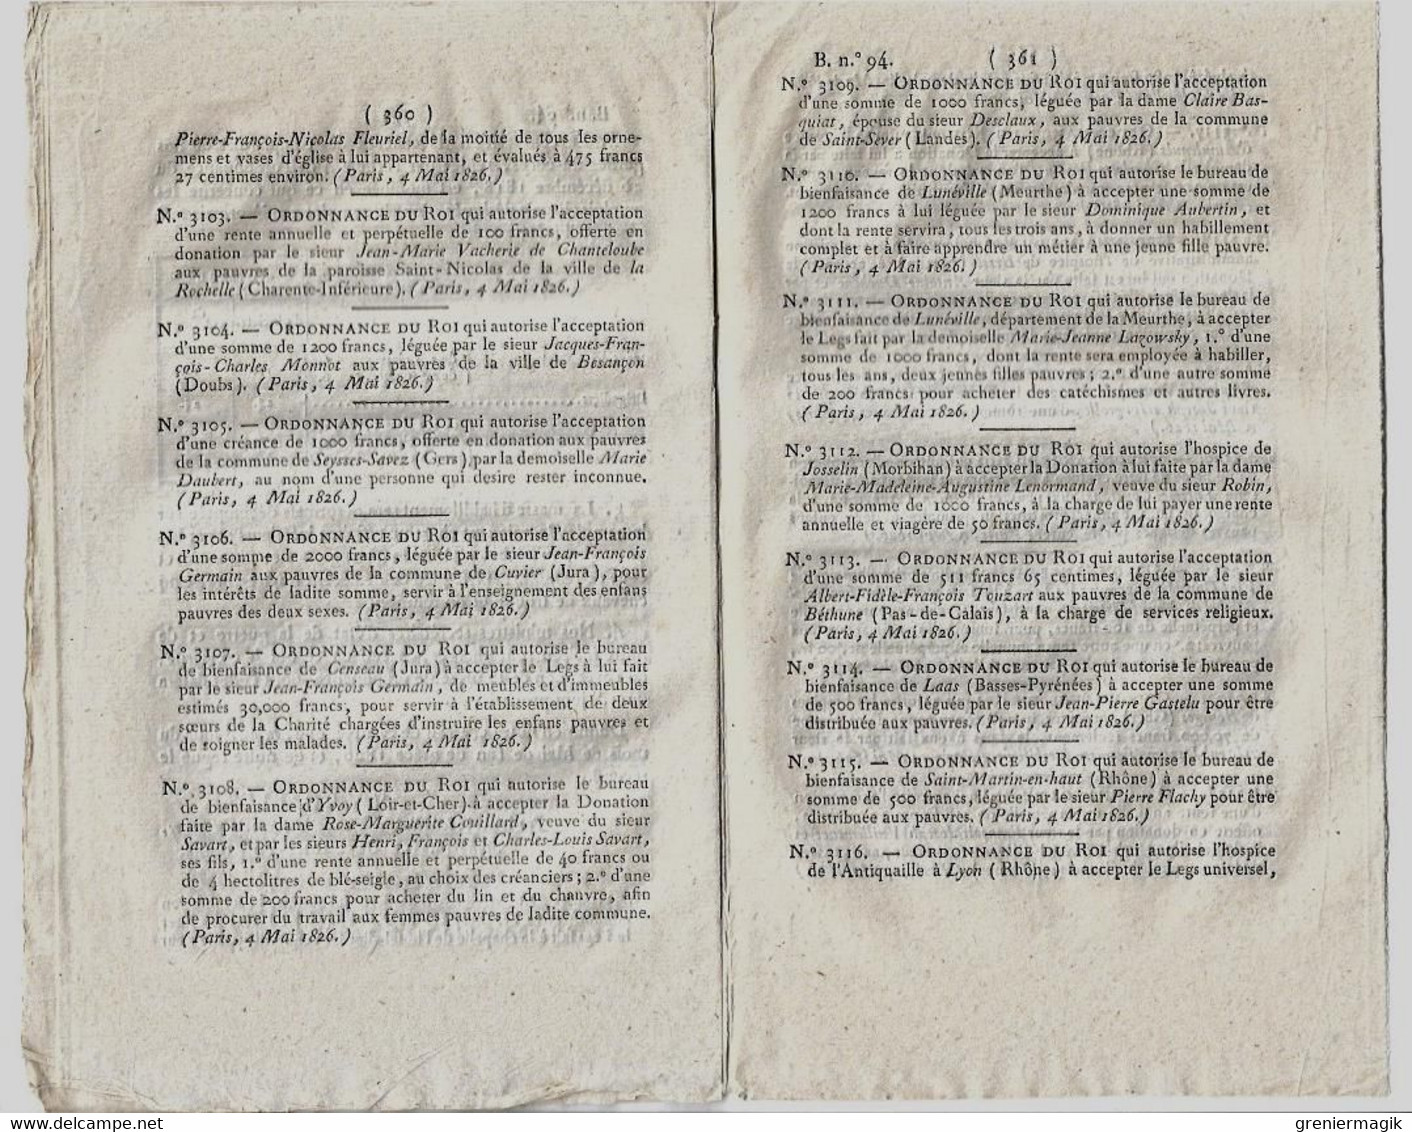 Bulletin des Lois 94 1826 Compagnies des Gardes-du-corps/Bénédictines du Saint-Sacrement Paris/Congrégations religieuses